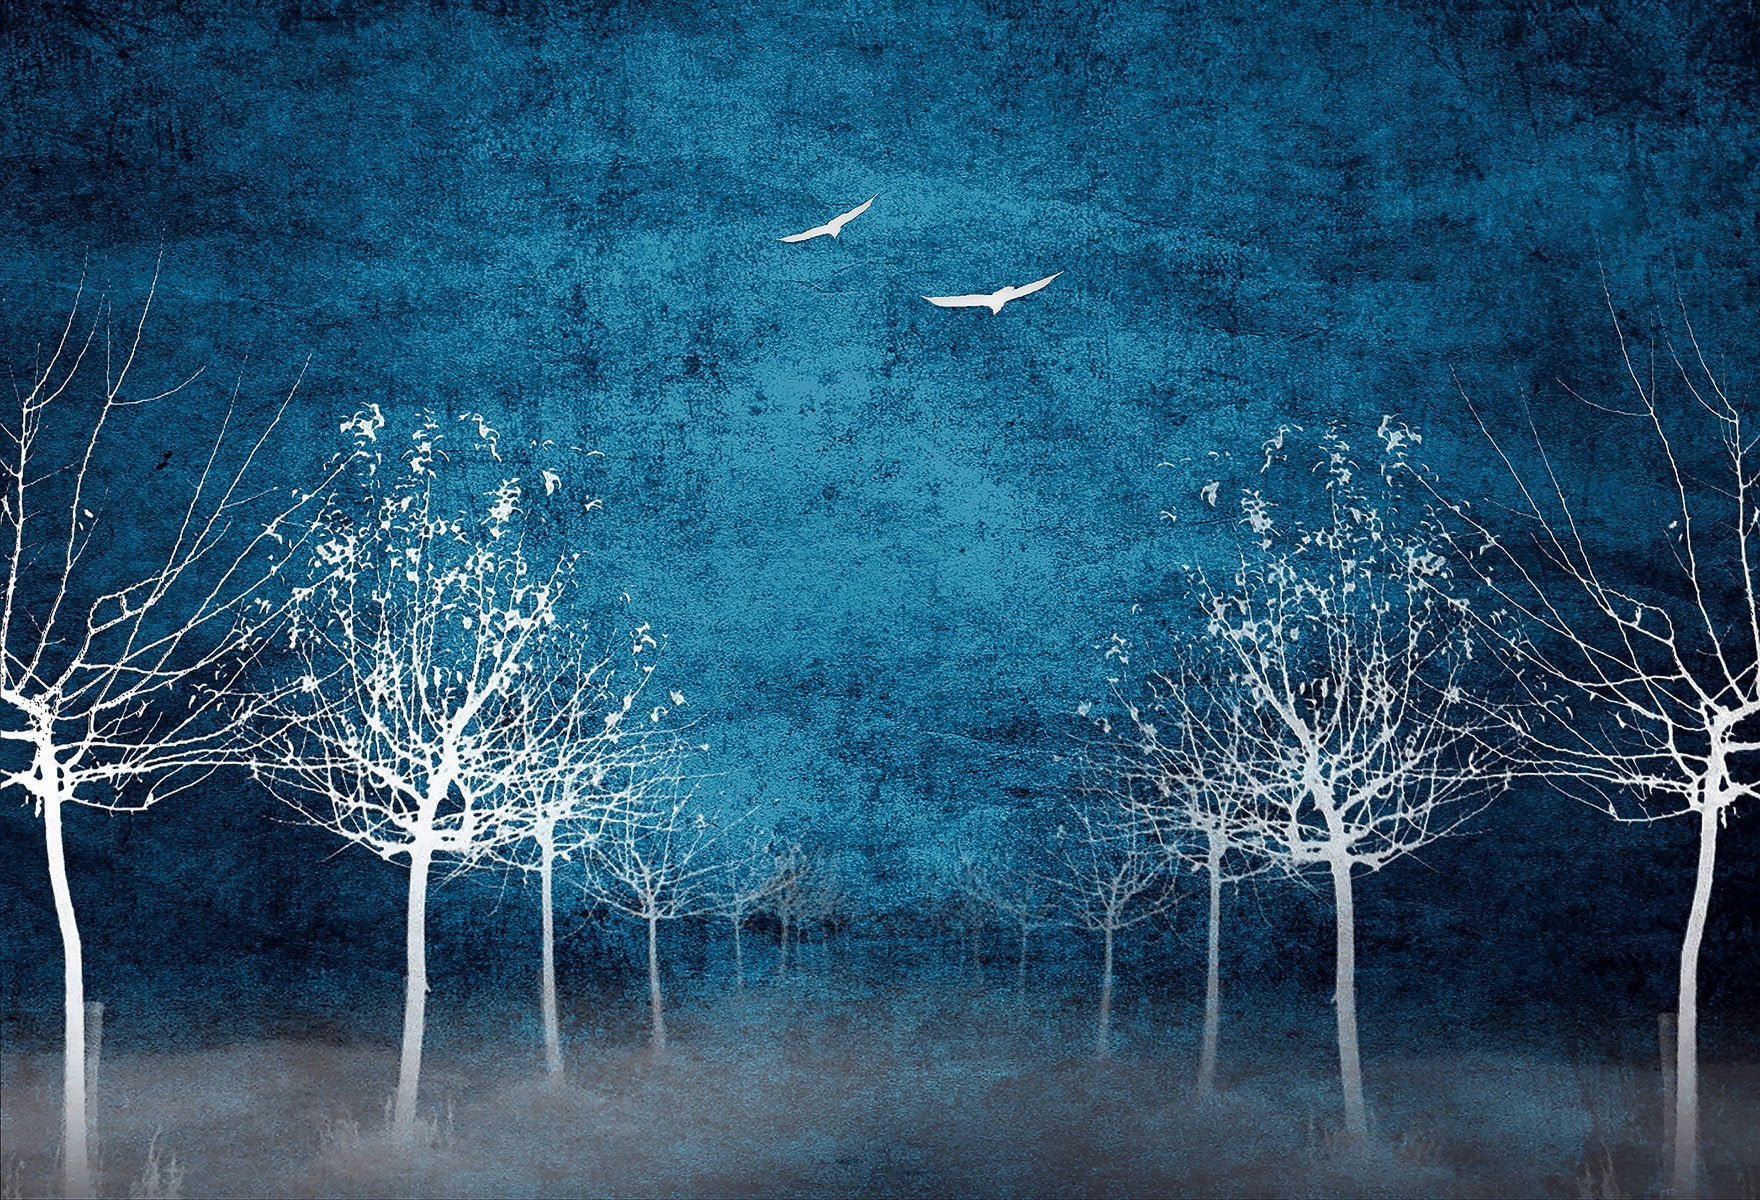 Kate White Bäume Vögel hoch Hintergrund für Fotografie Entworfen von Marina Smith